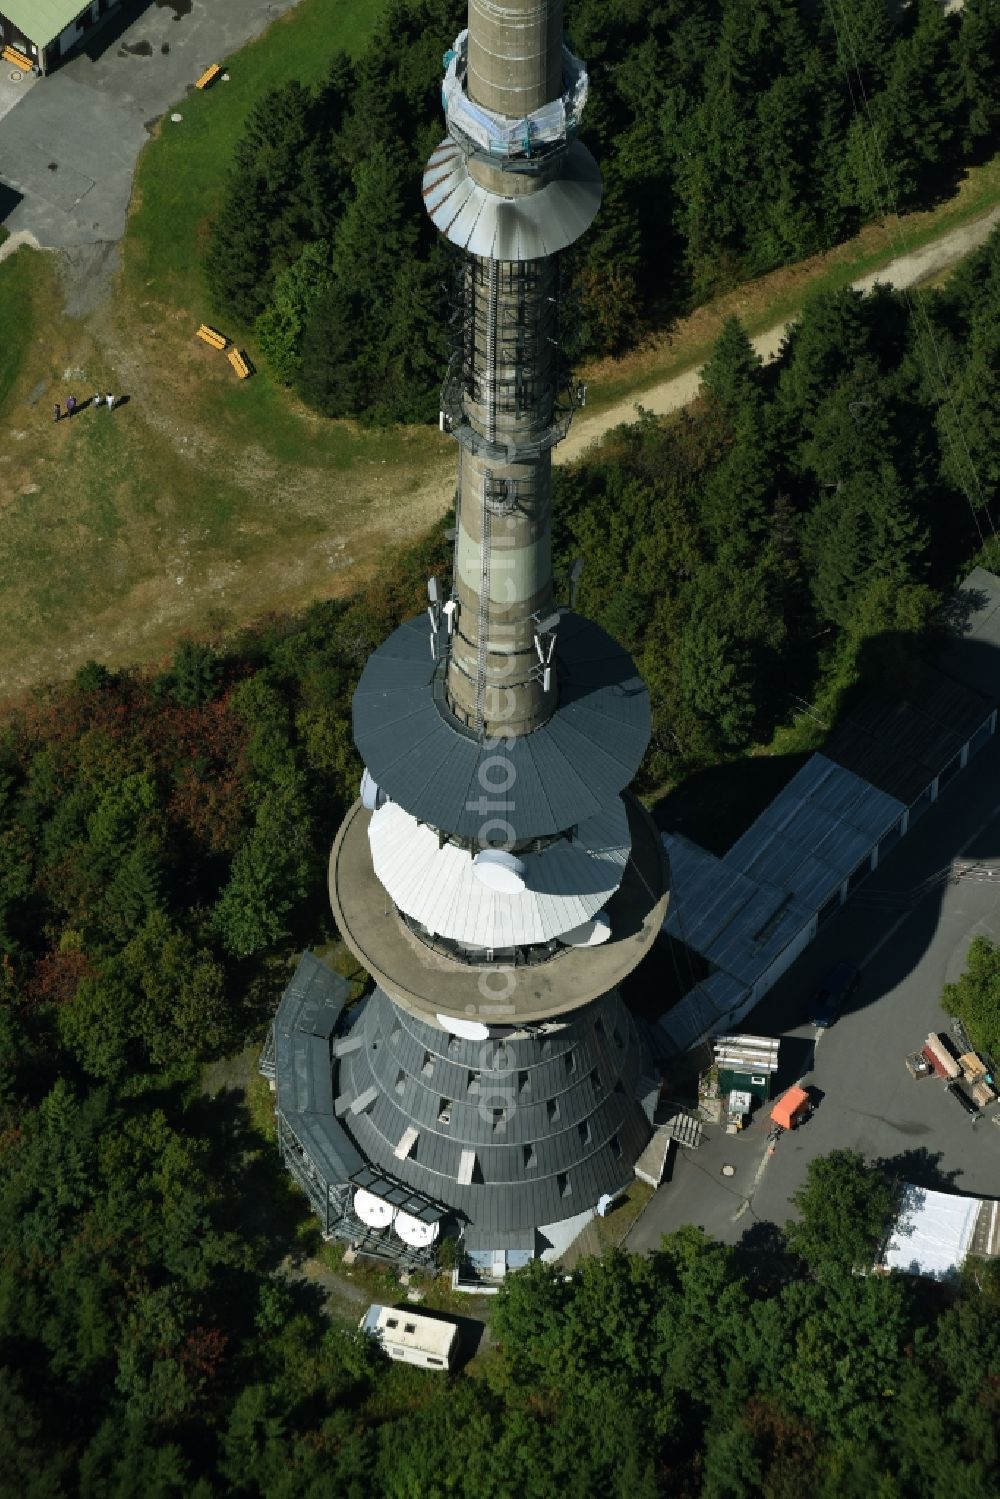 Bischofsgrün from above - Antenna and transmission tower radio mast Sender Ochsenkopf in Bischofsgruen in the state Bavaria